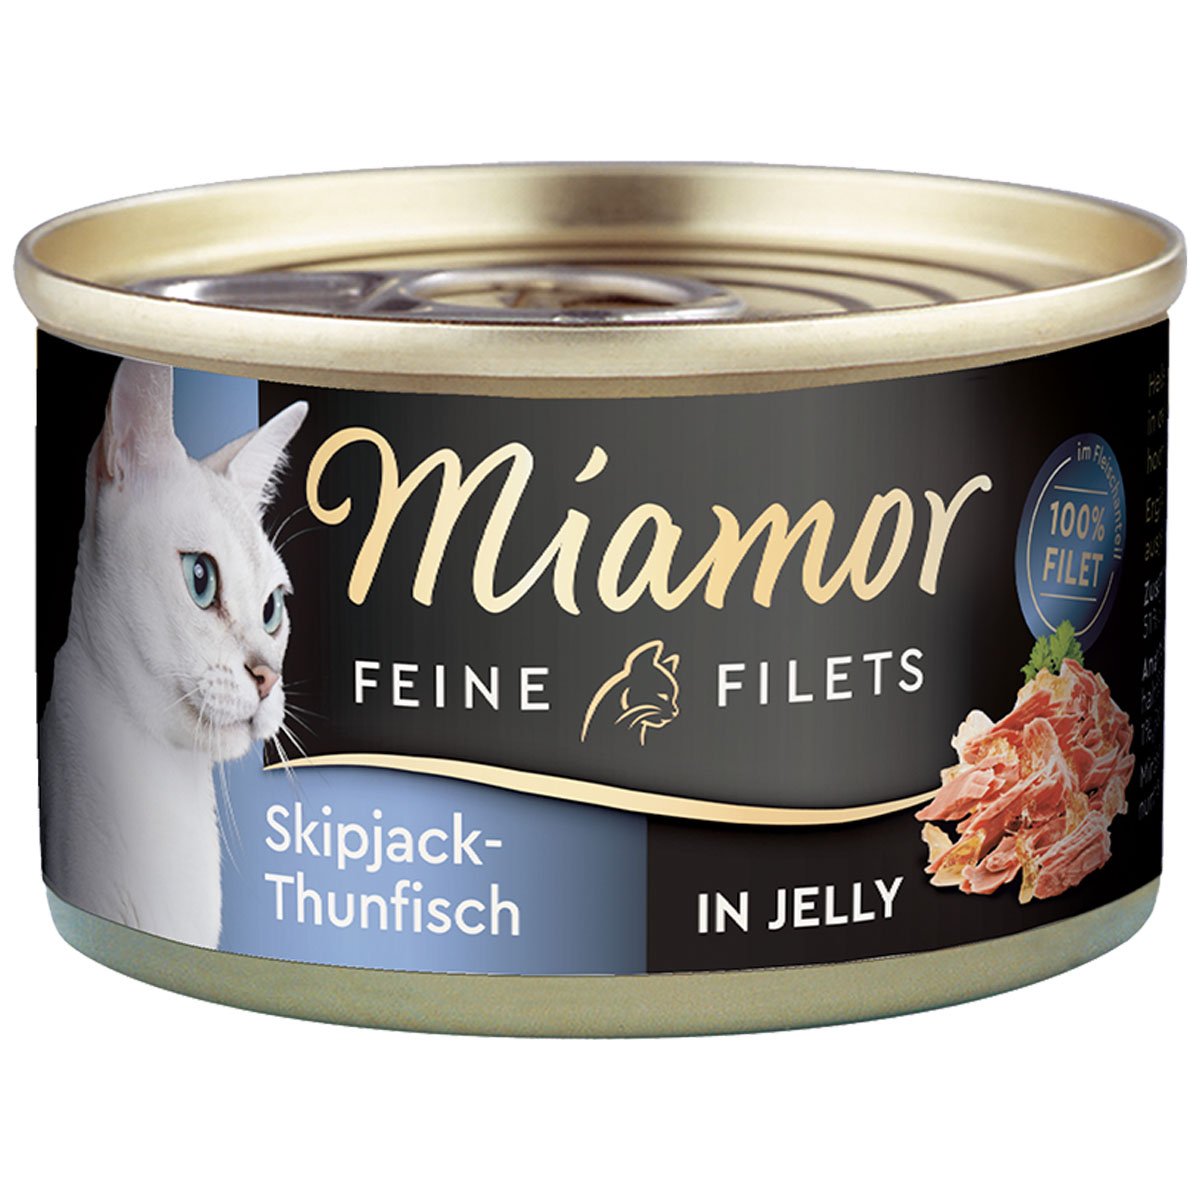 Miamor Feine Filets Skipjack-Thunfisch in Jelly 48x100g von Miamor